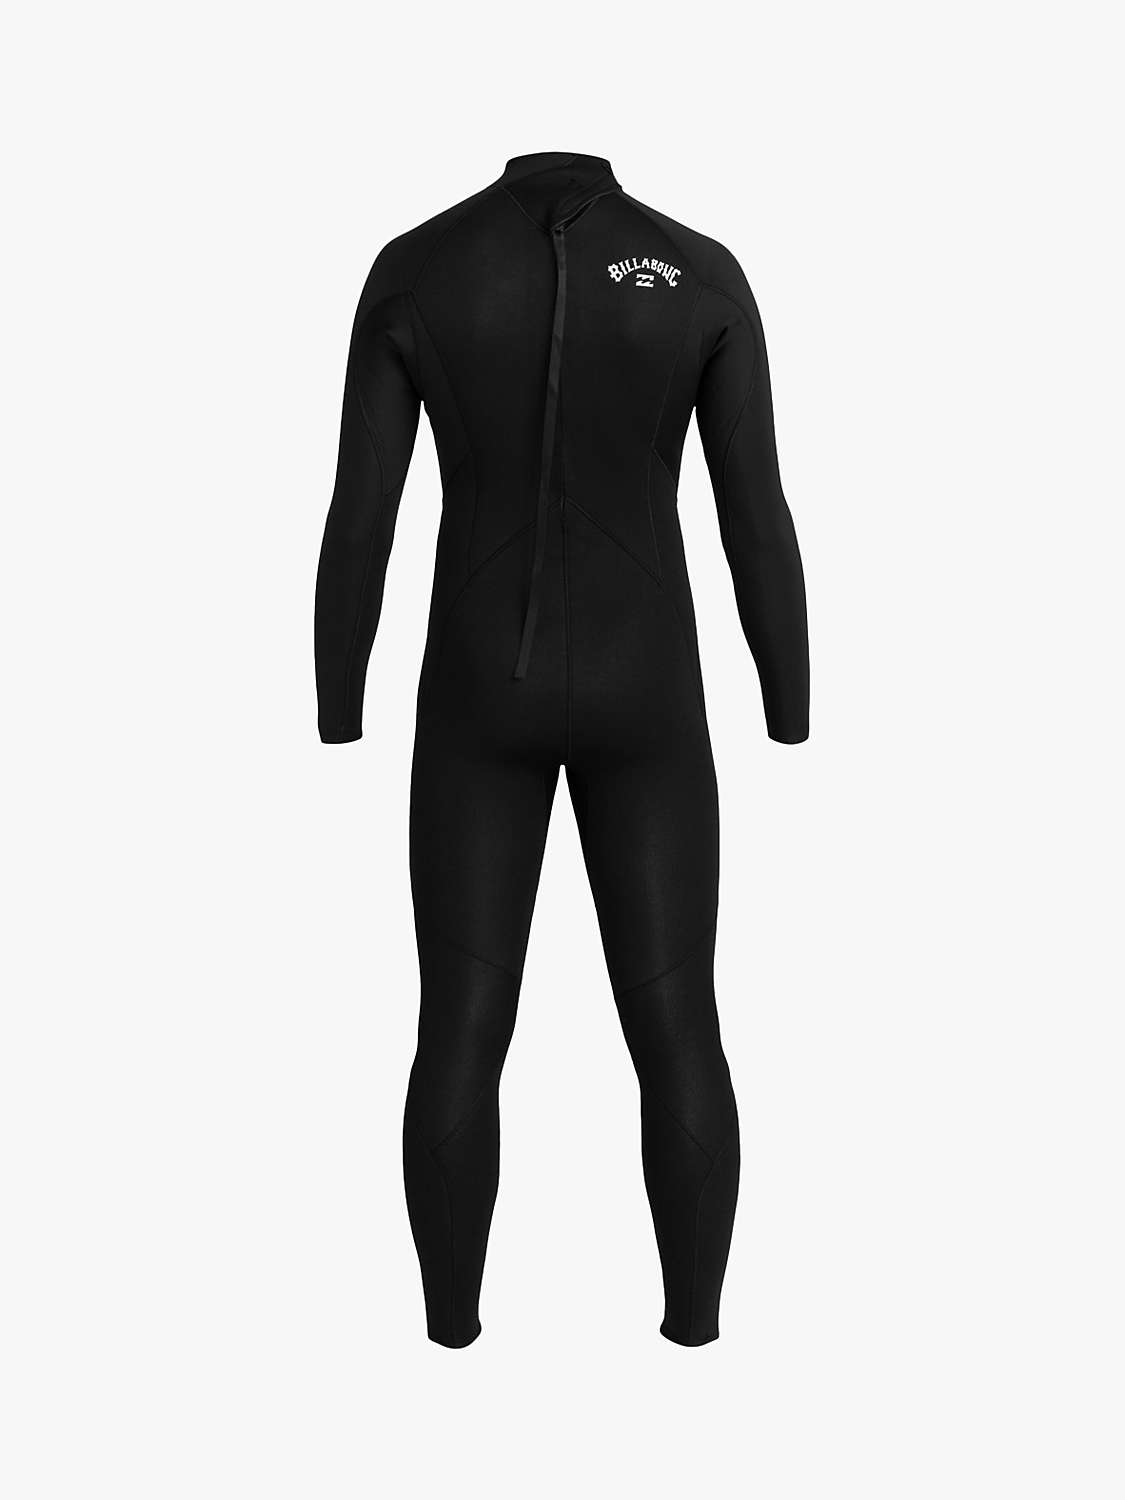 Buy Billabong 4/3mm Intruder Back Zip Long Sleeve Wetsuit Online at johnlewis.com